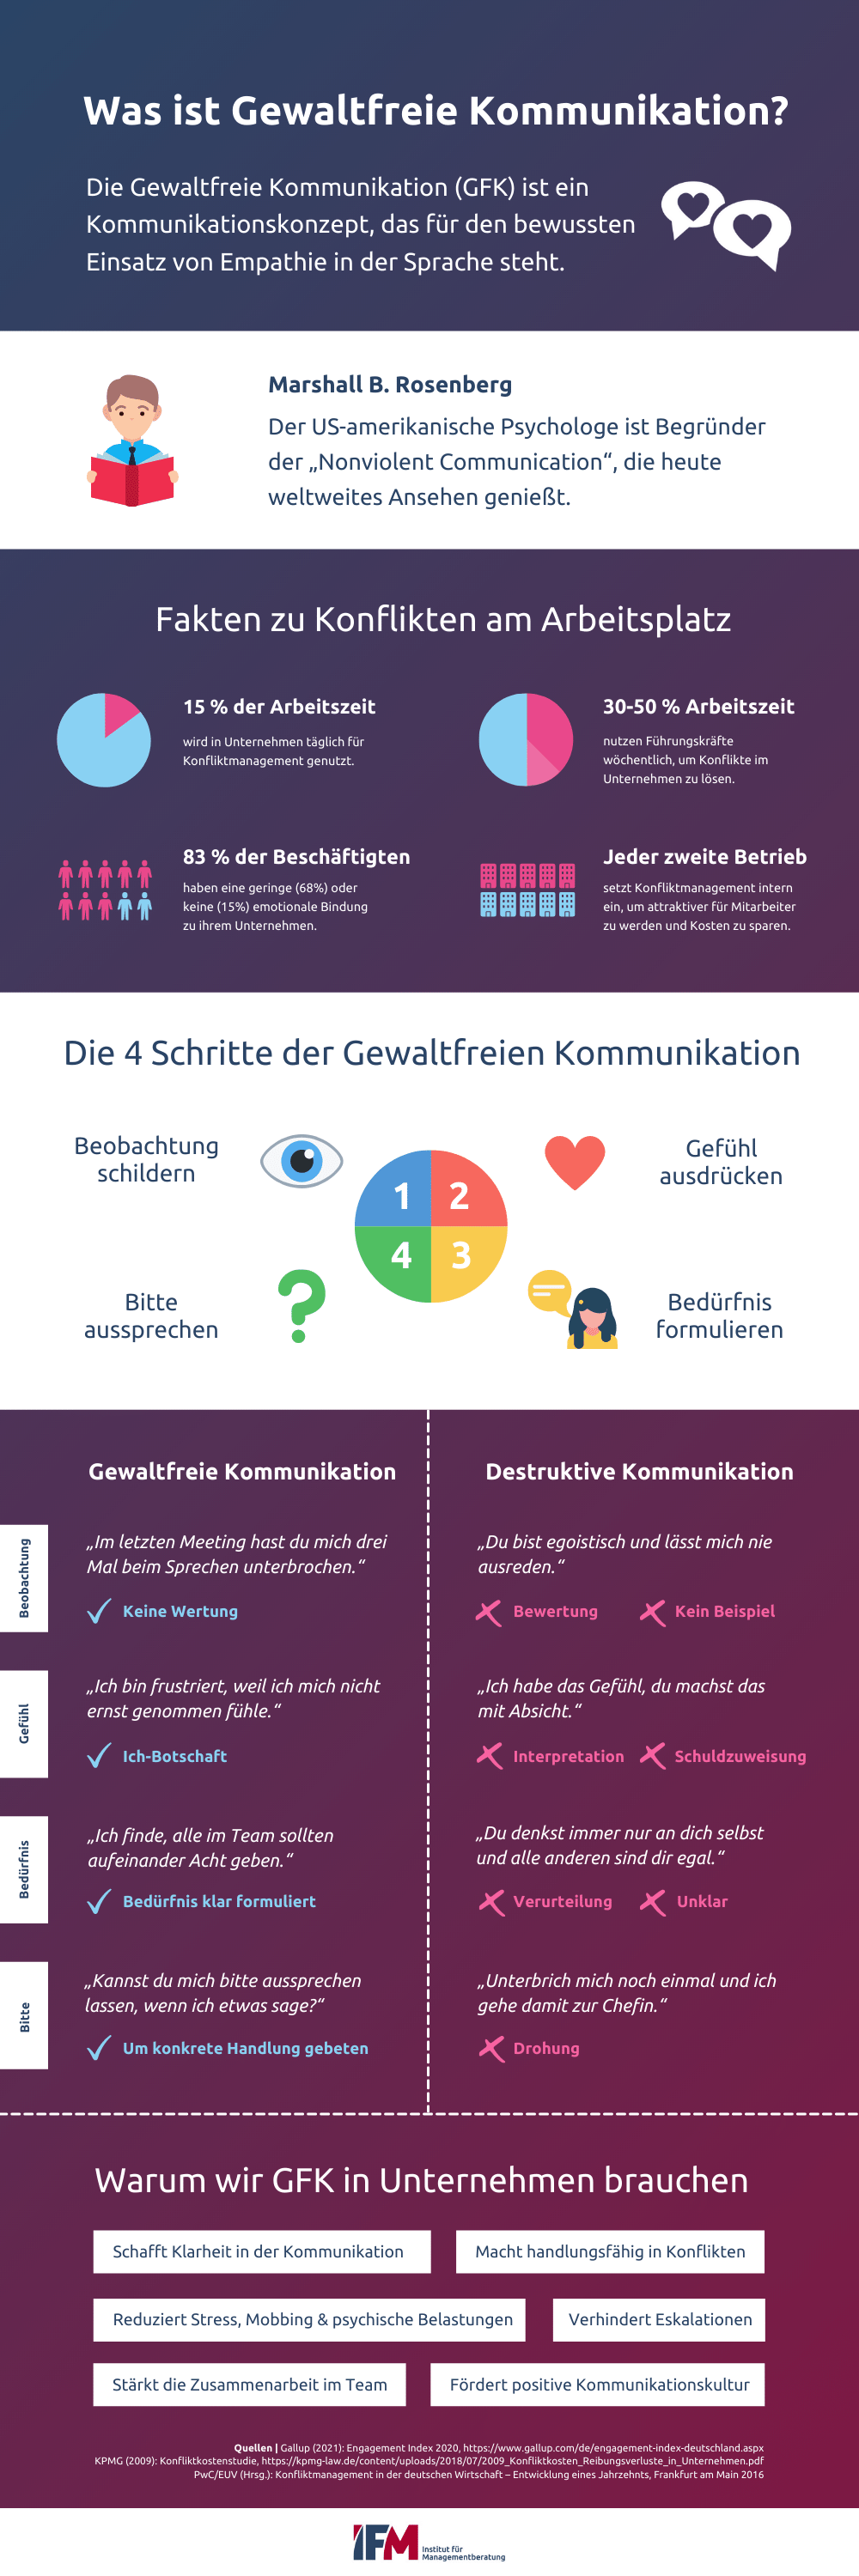 Infografik zeigt alles, was wir zur Gewaltfreien Kommunikation (GFK) von Rosenberg wissen müssen. Definition, die 4 Schritte der GFK und zahlreiche Beispiele